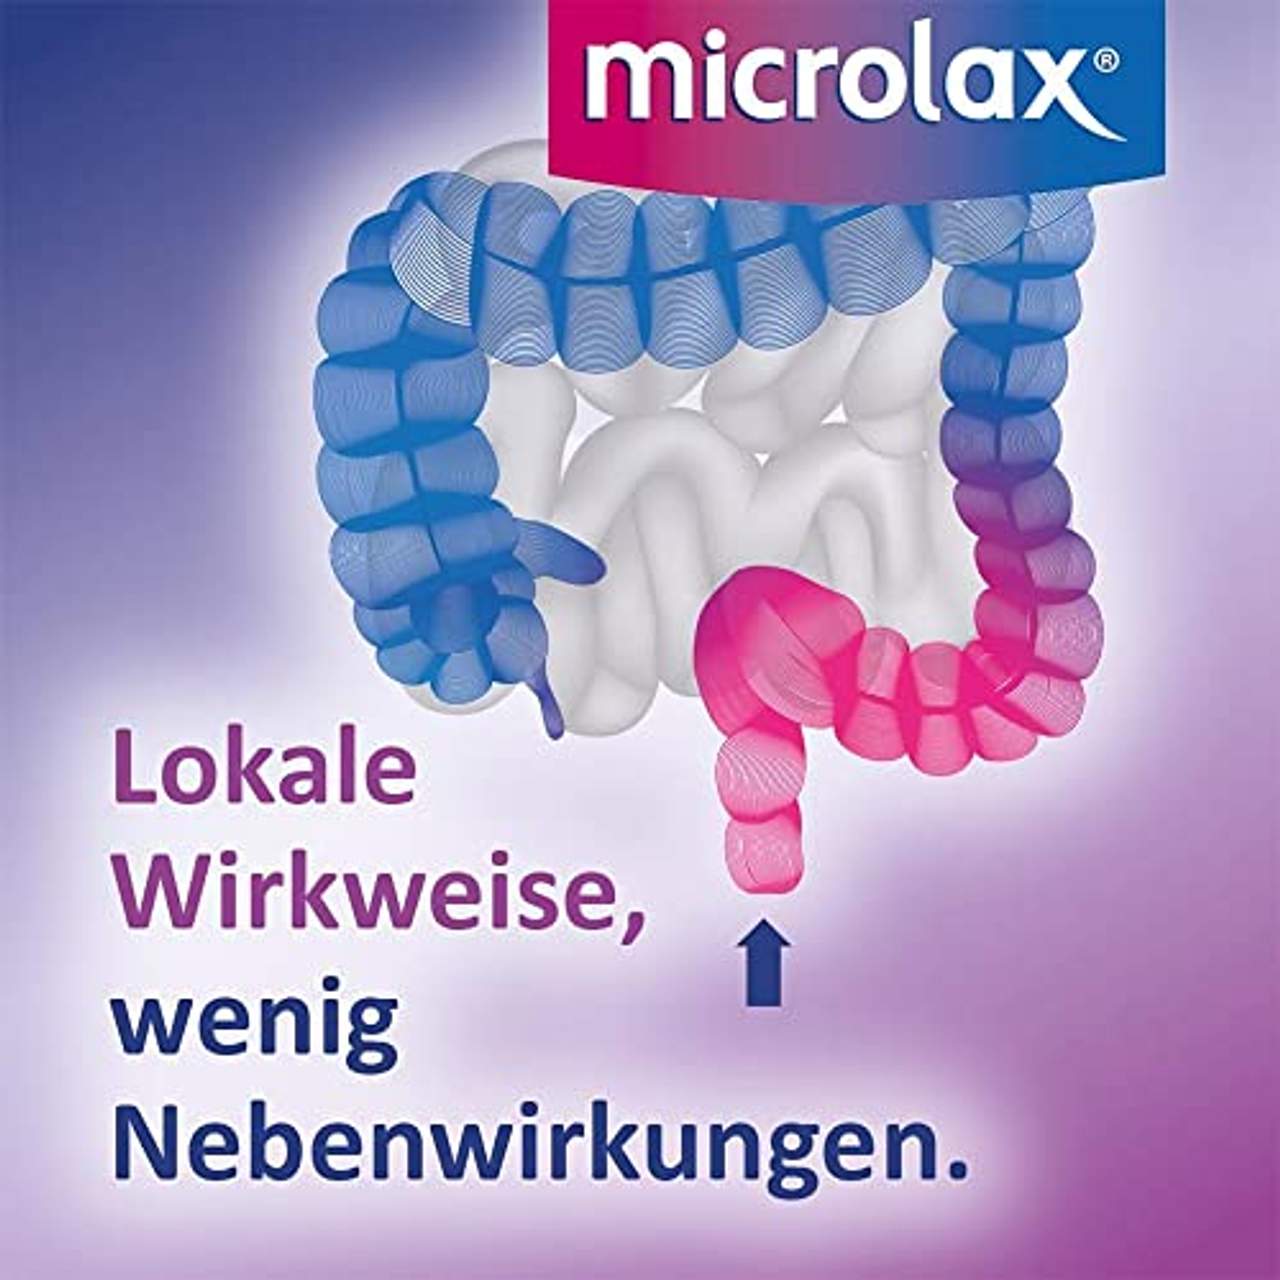 Microlax Abführmittel